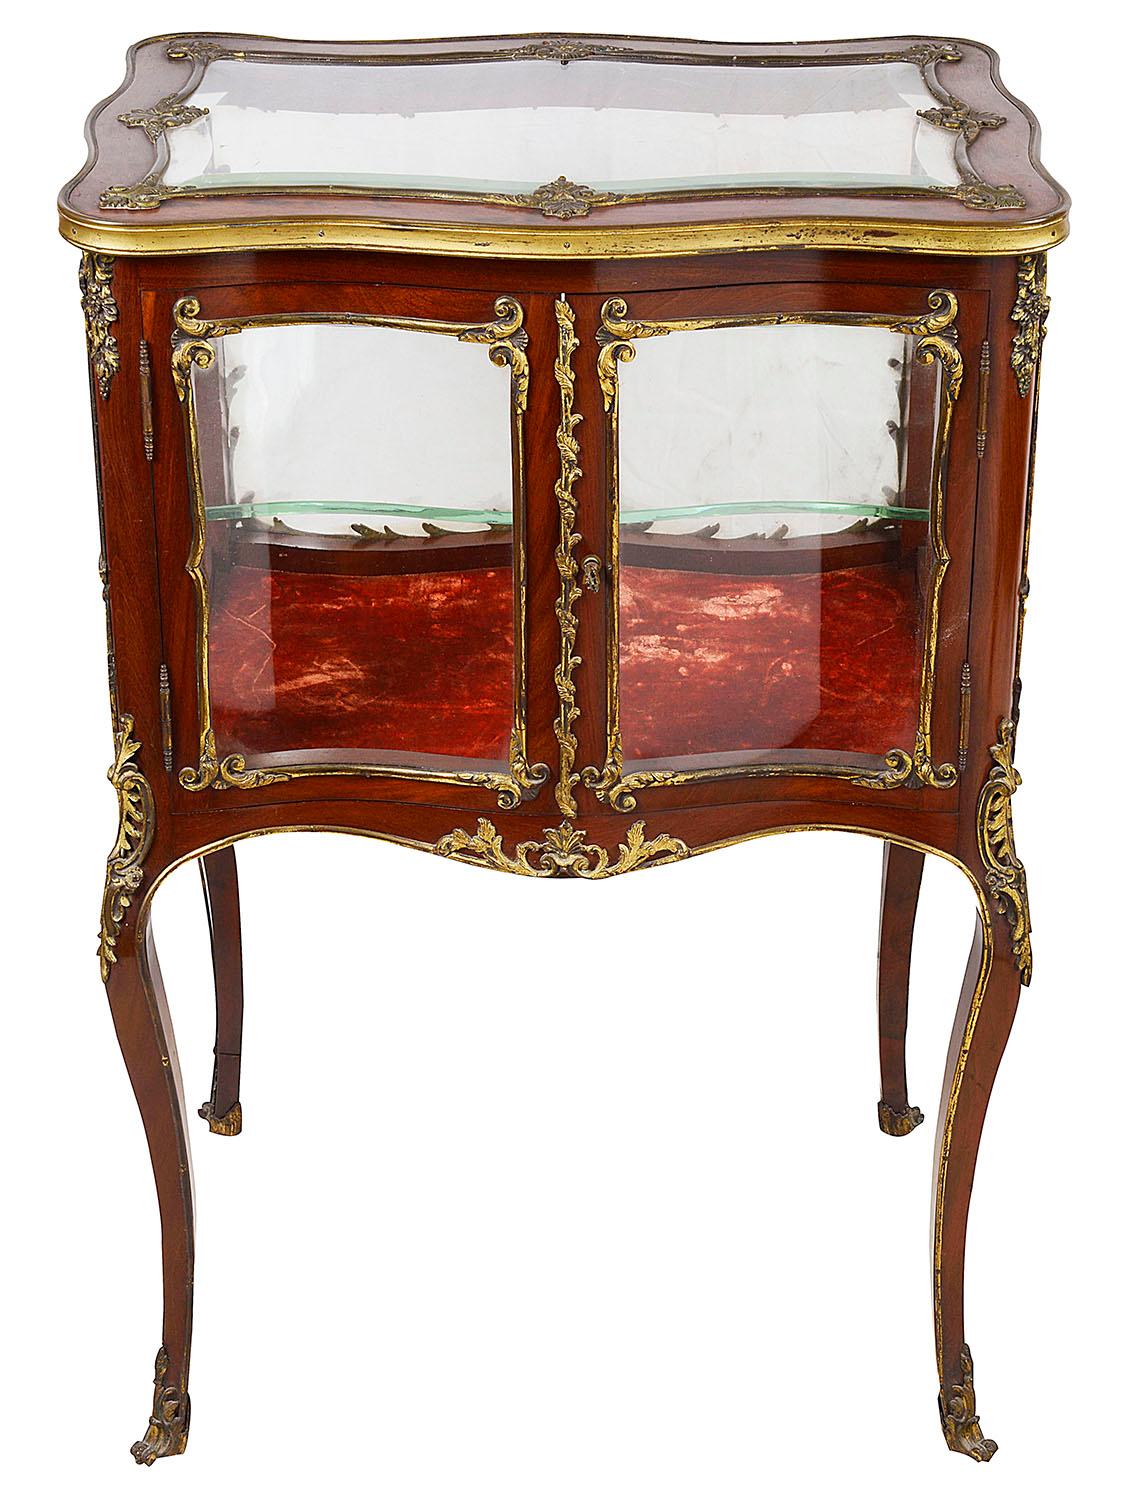 Eine gute Qualität des späten 19. Jahrhunderts Französisch Mahagoni freistehende Bijouterie Schrank. mit Scrolling Rokoko, Louis XVI-Stil vergoldet Ormolu Beschläge, eine einzelne Tür zu öffnen, um die Glasregal im Inneren zugreifen. Er steht auf